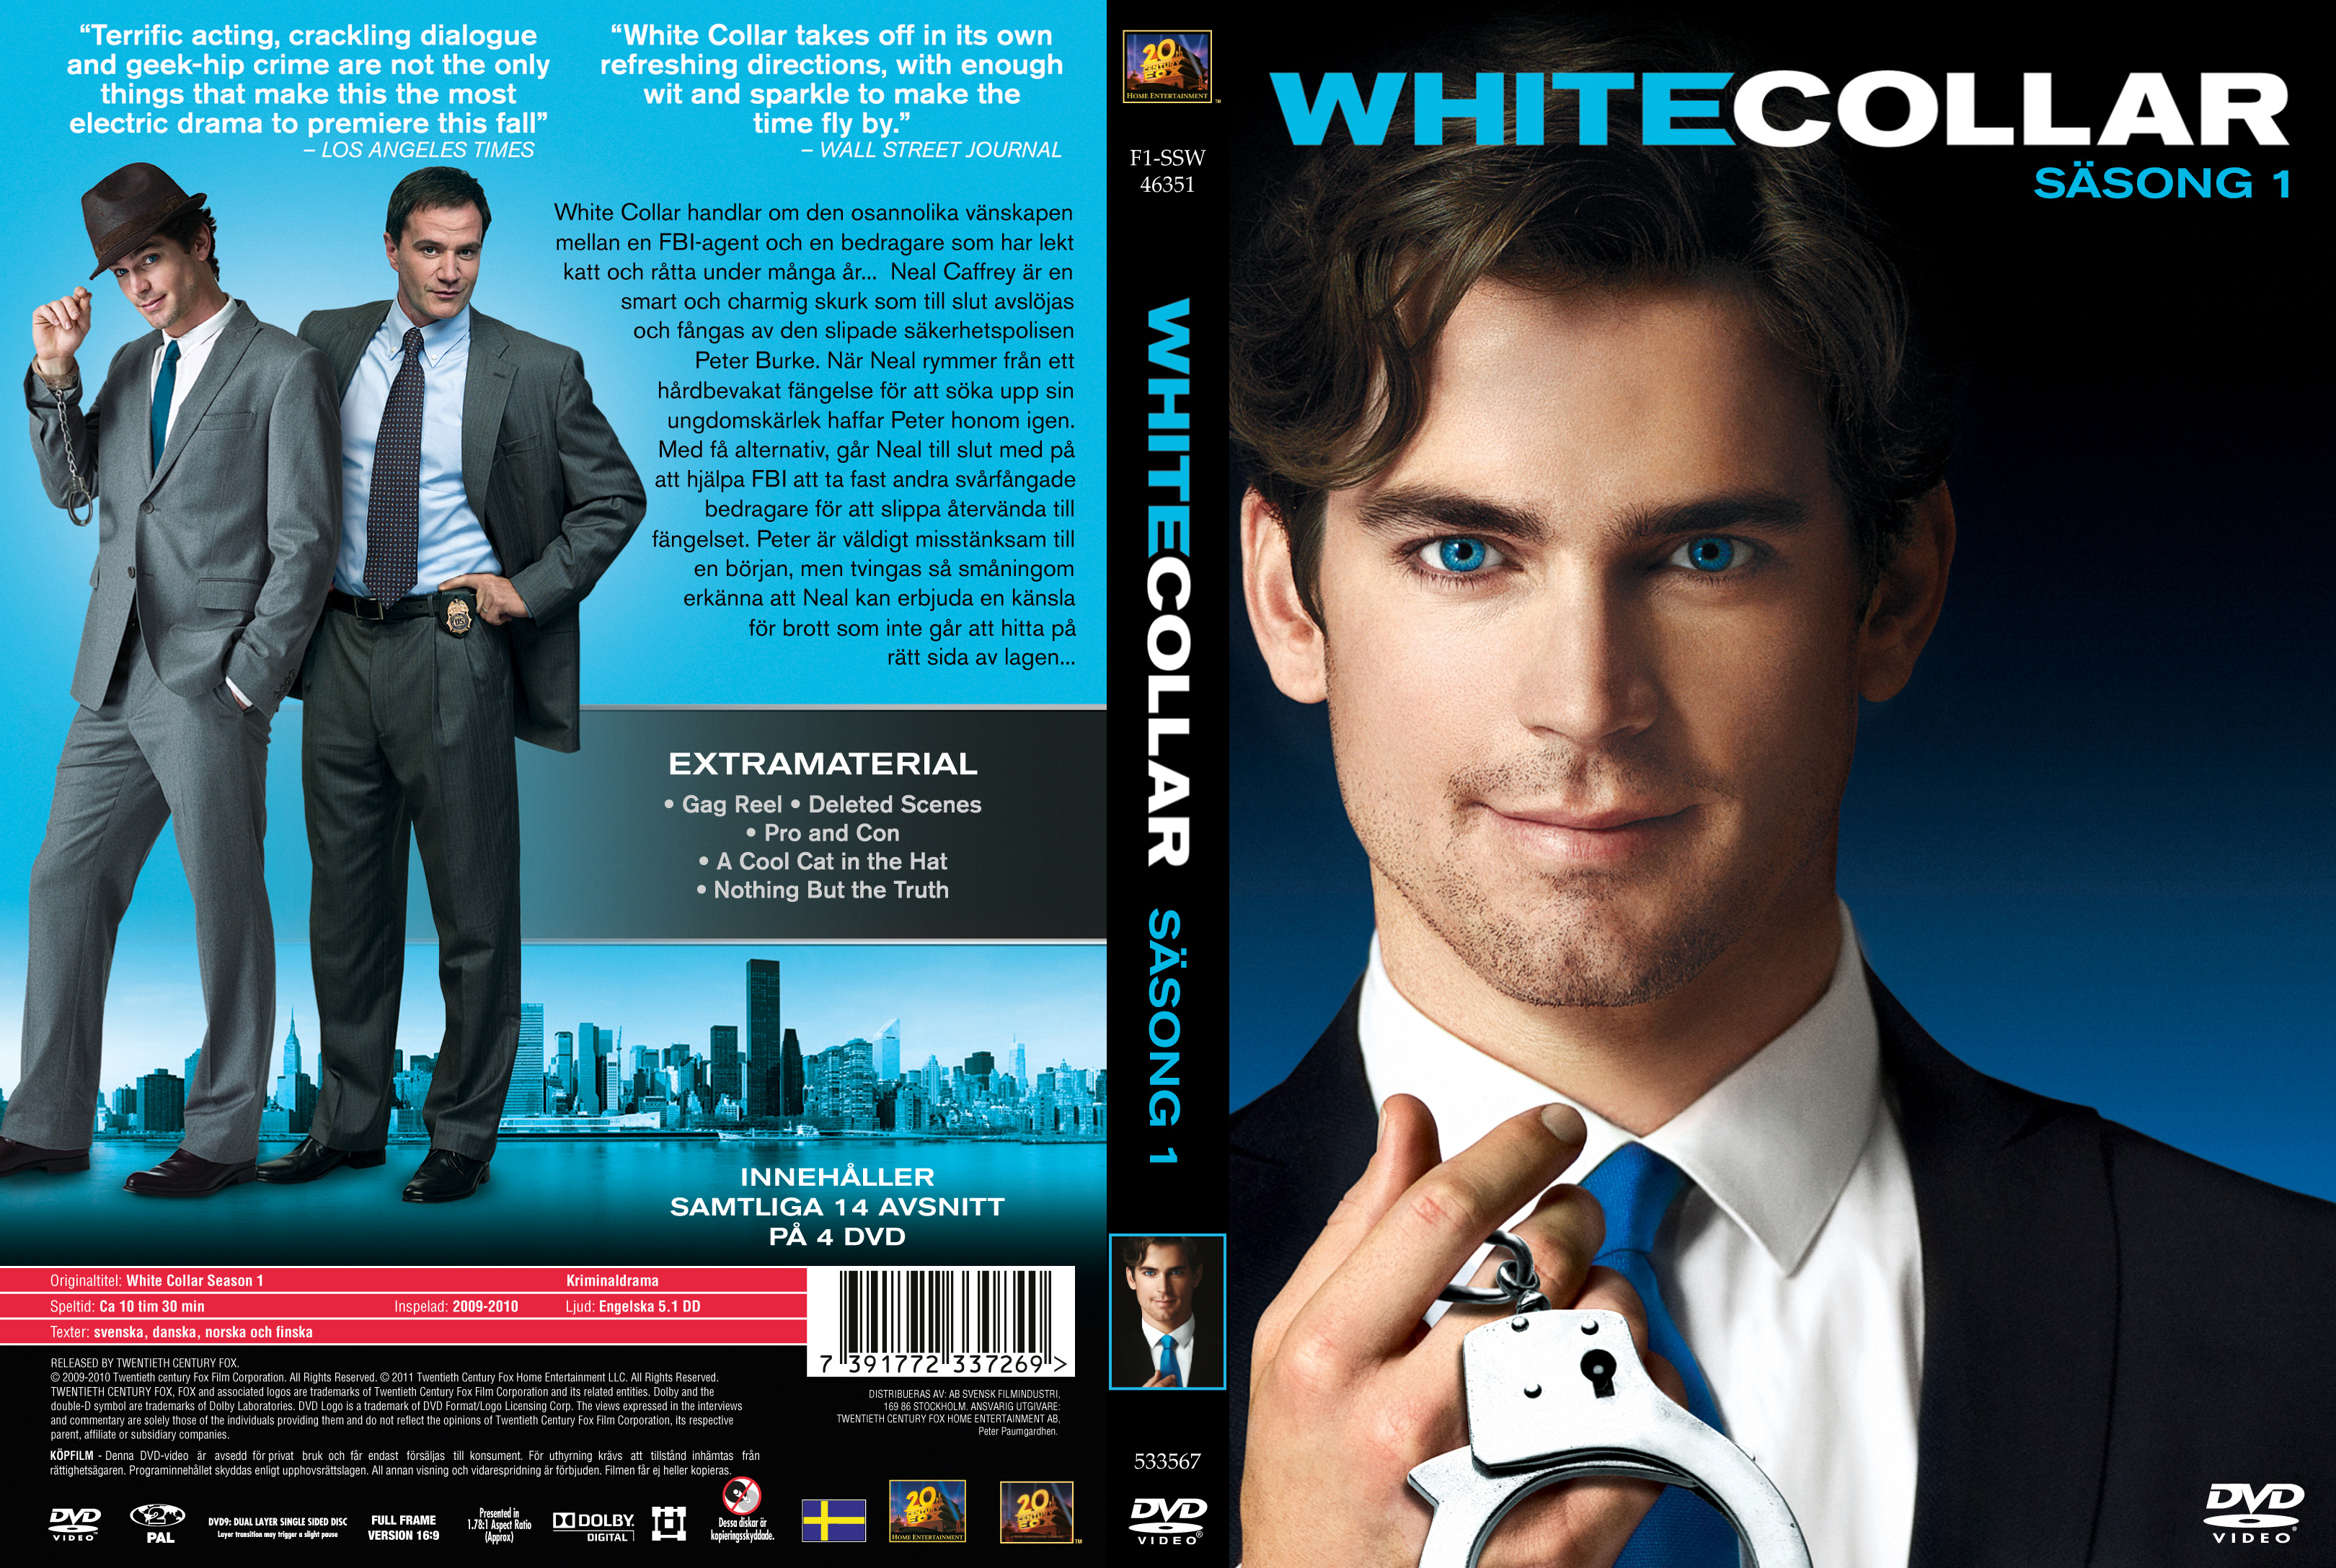 White Collar (6ª Temporada) - 2014